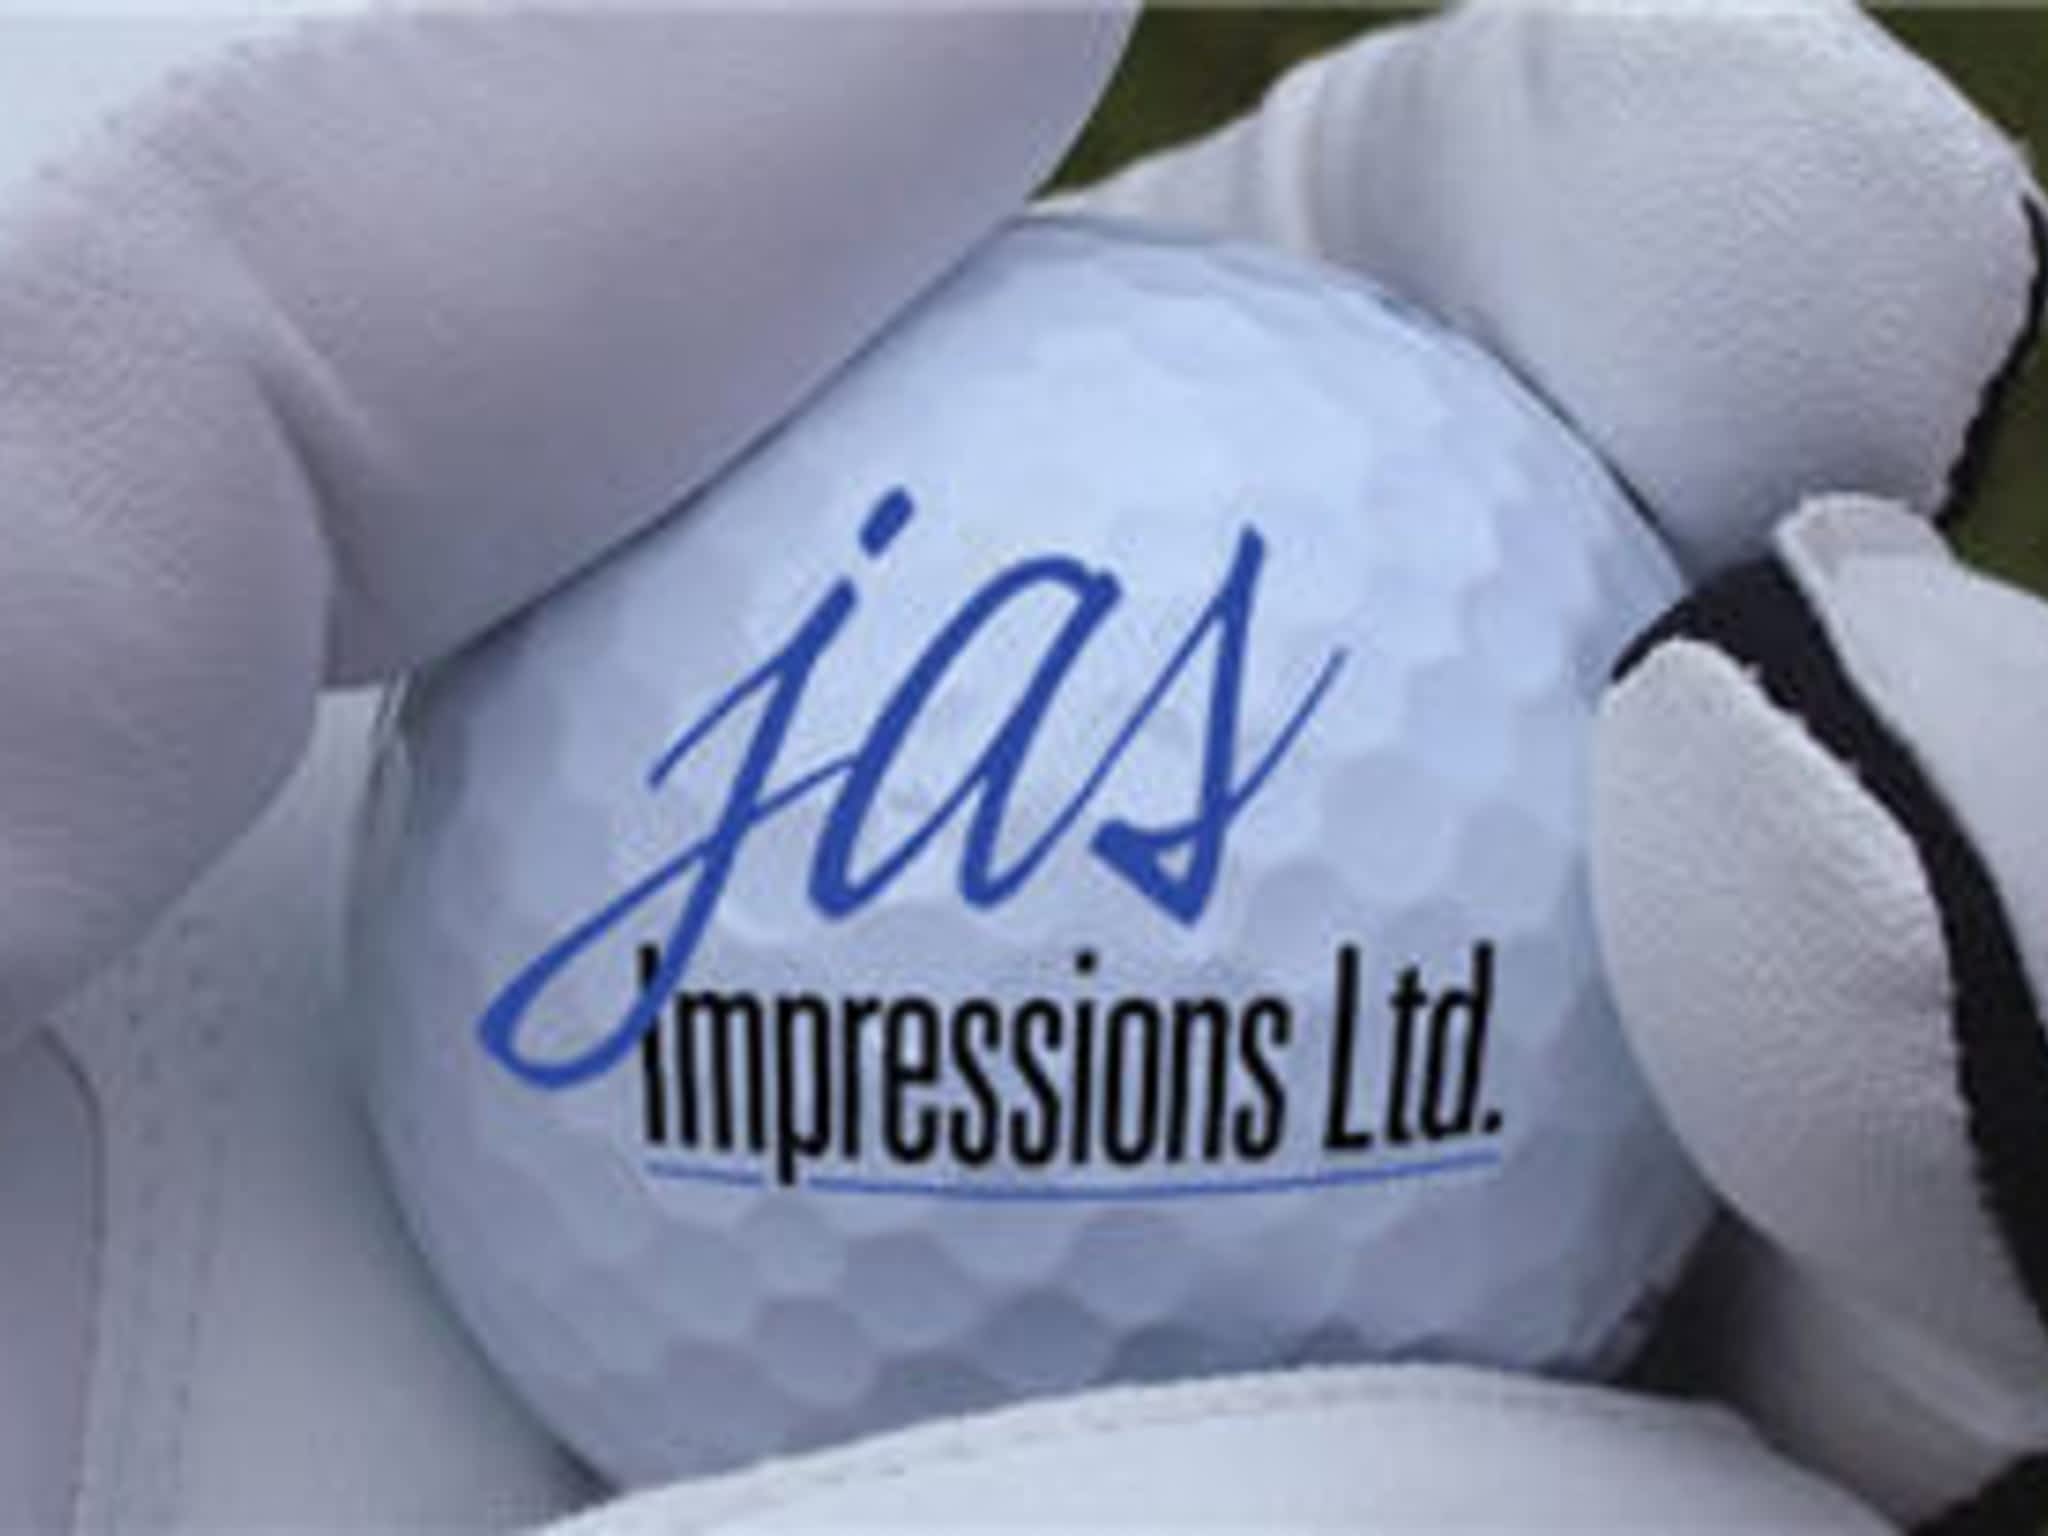 photo Jas Impressions Ltd